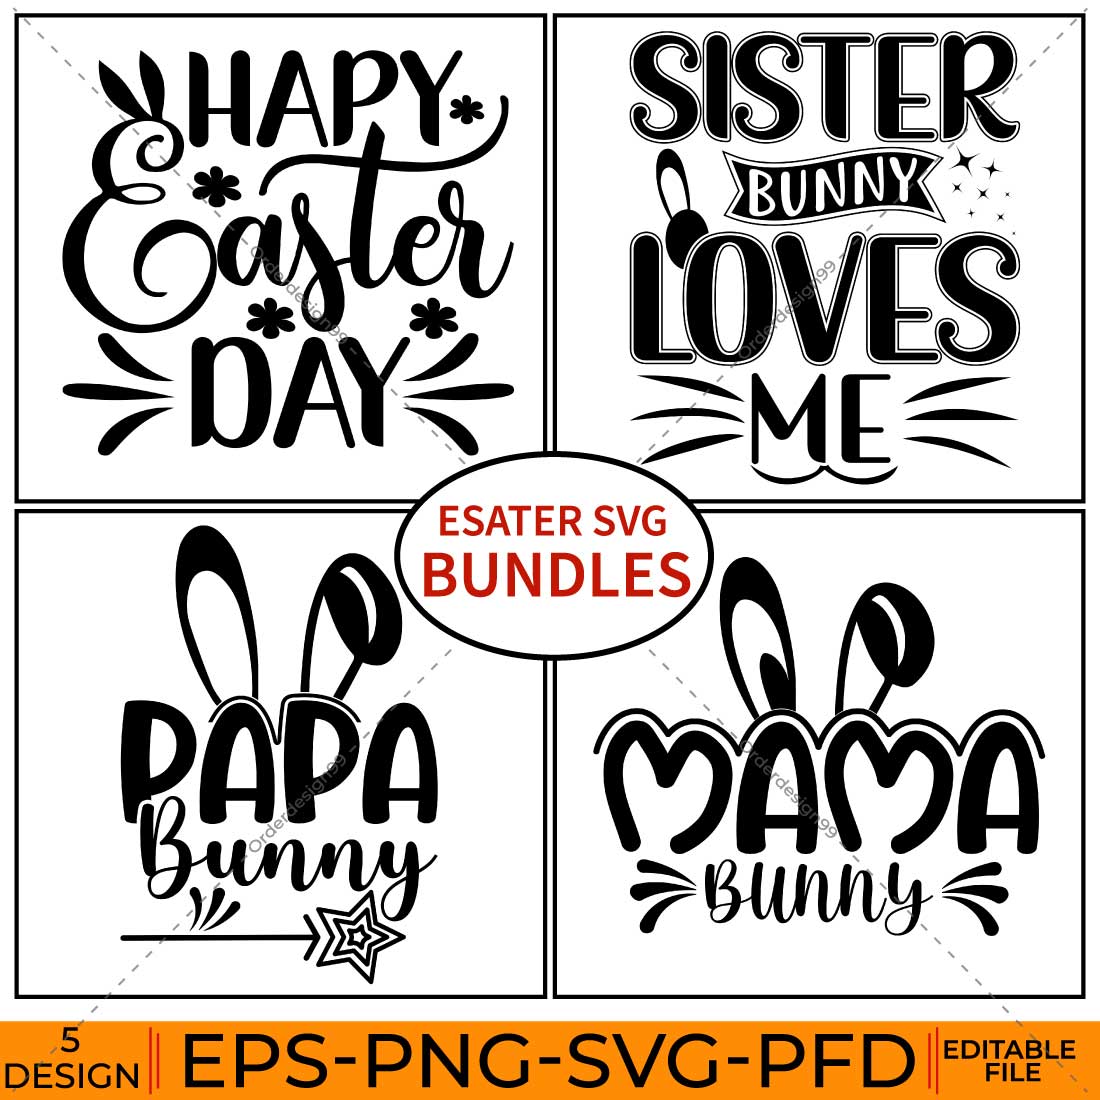 Easter SVG bundles cover image.